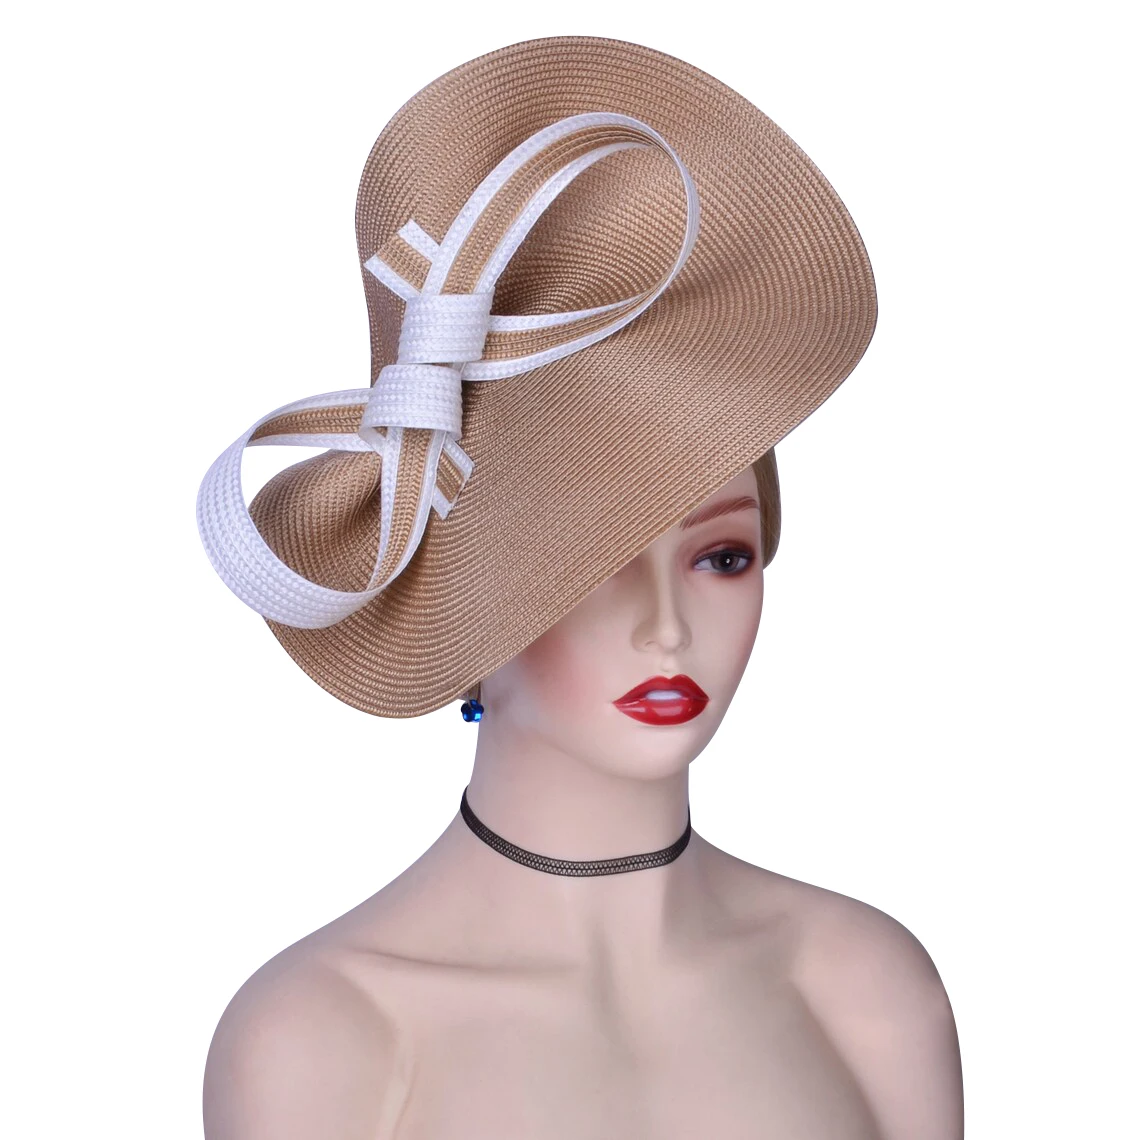 

Newest Premium Fascinator Kentucky Derby Hat Straw Wedding Photography Hat for Women Ladies